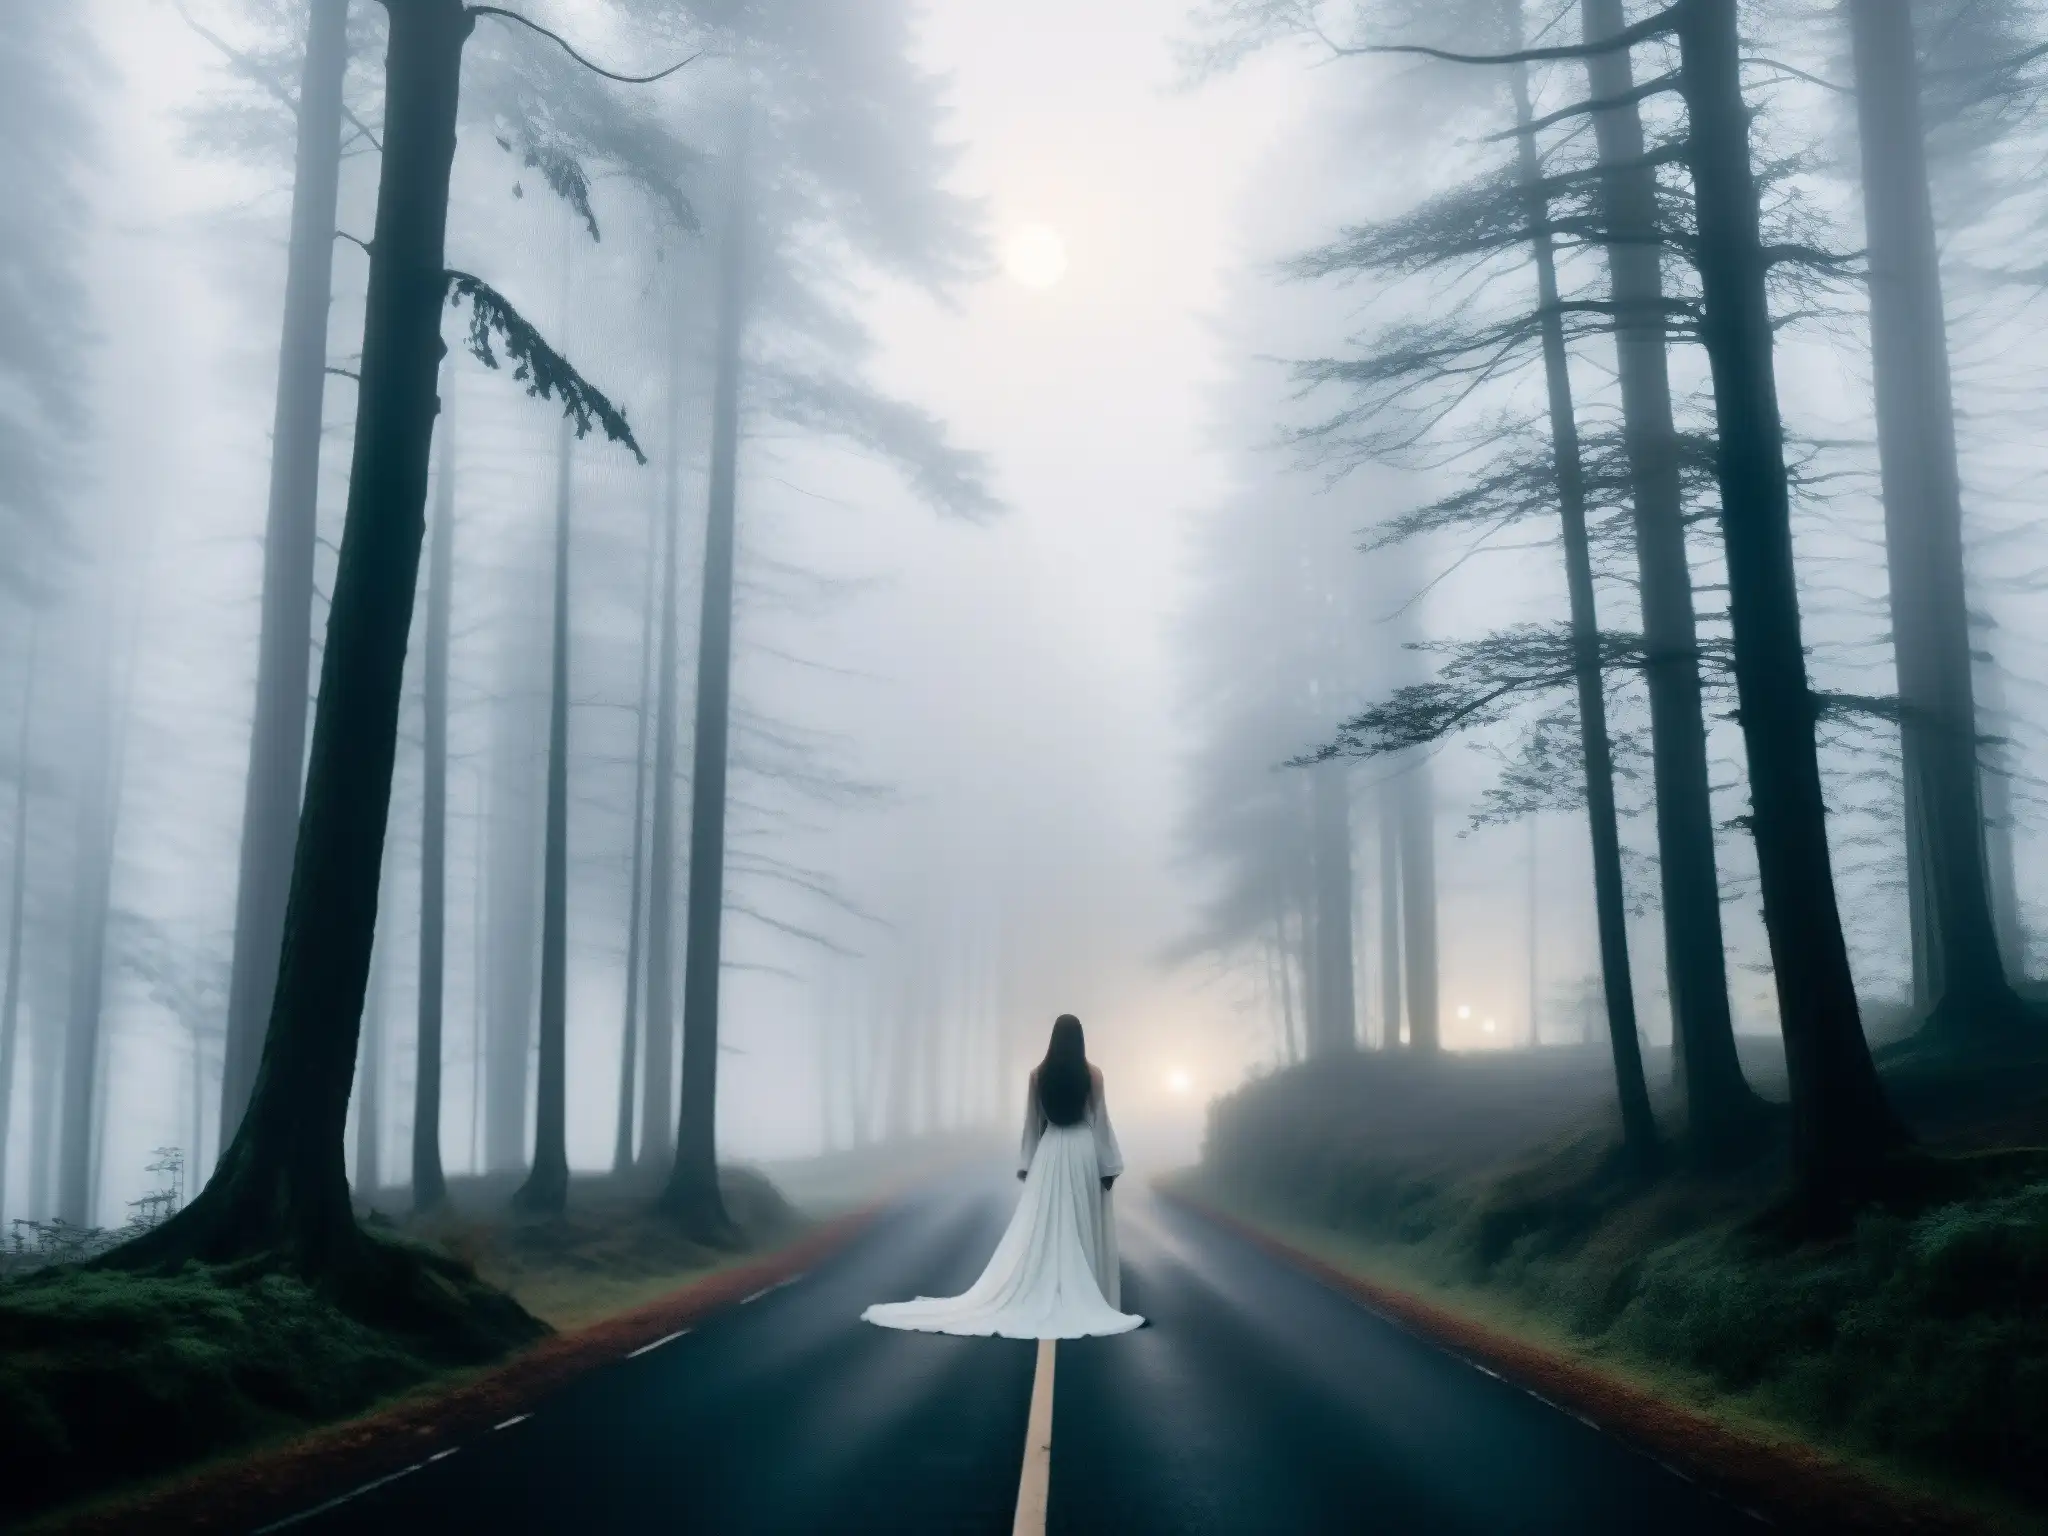 Una figura en blanco, entre la niebla de un denso bosque, evoca la leyenda de la mujer de blanco en Corea